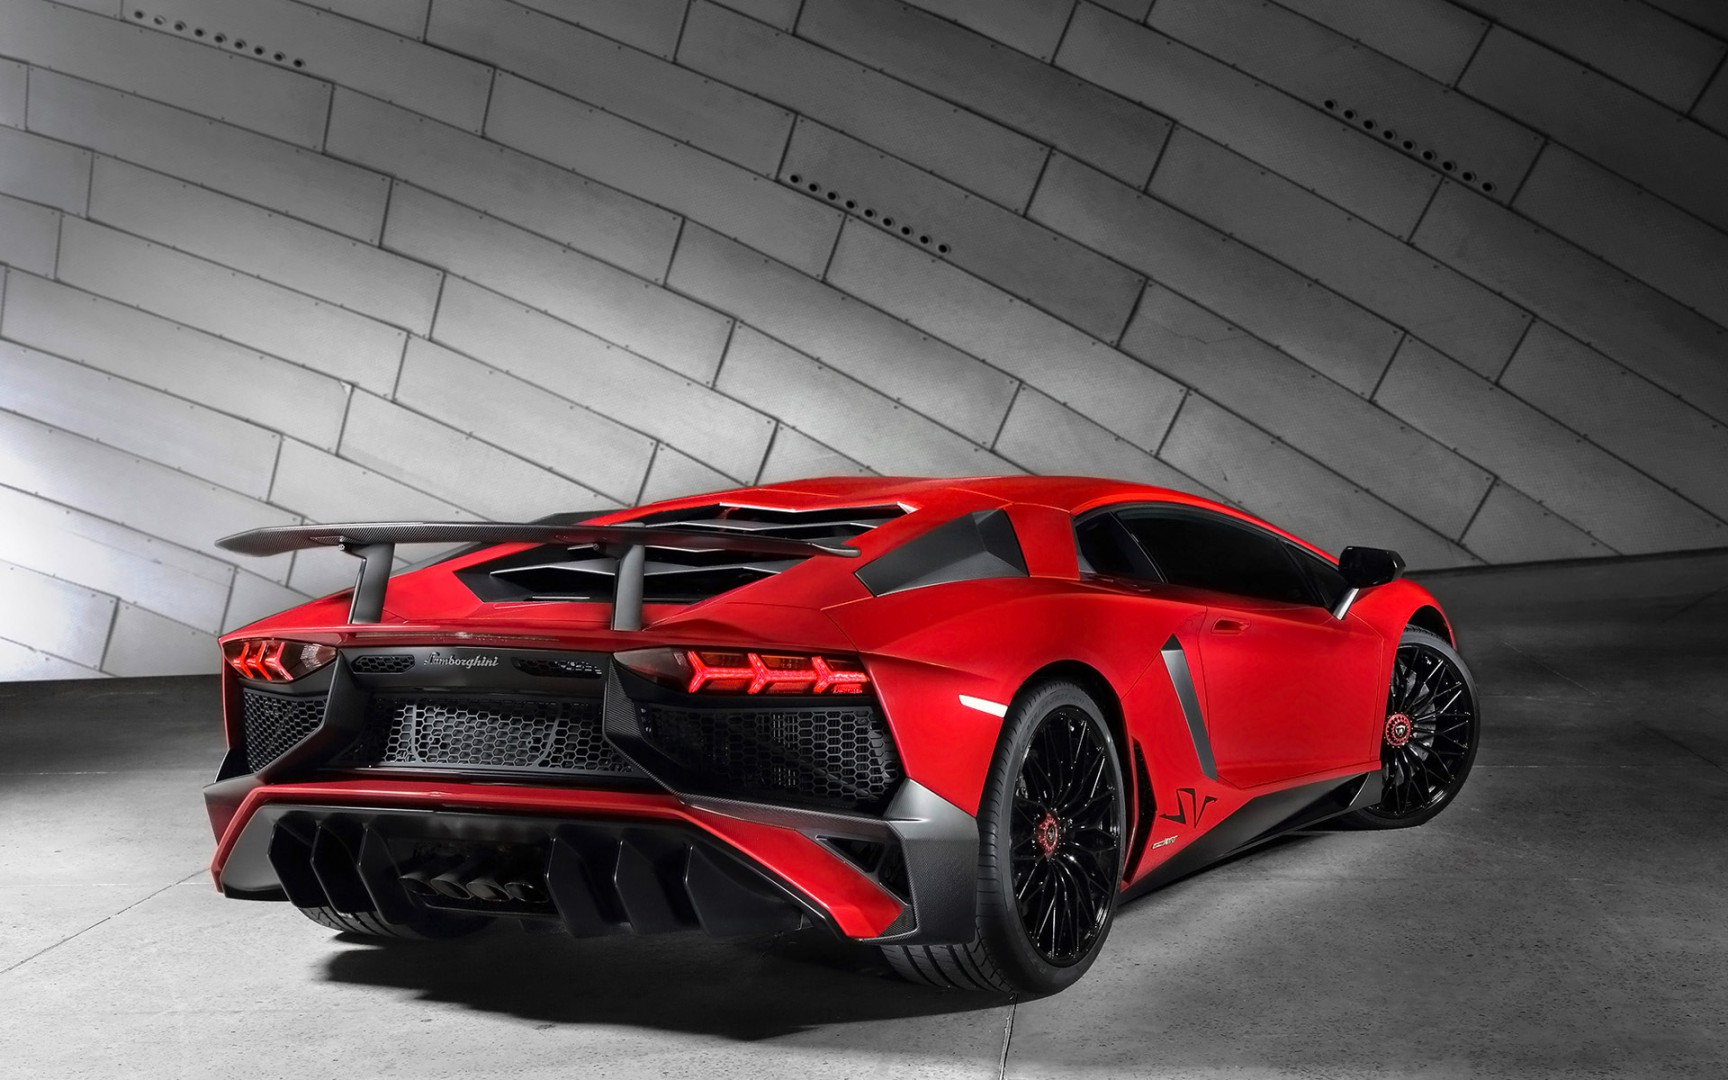 2015 Lamborghini Aventador Lp750 4 Superveloce 2 Car - Full Hd Lamborghini Car - HD Wallpaper 